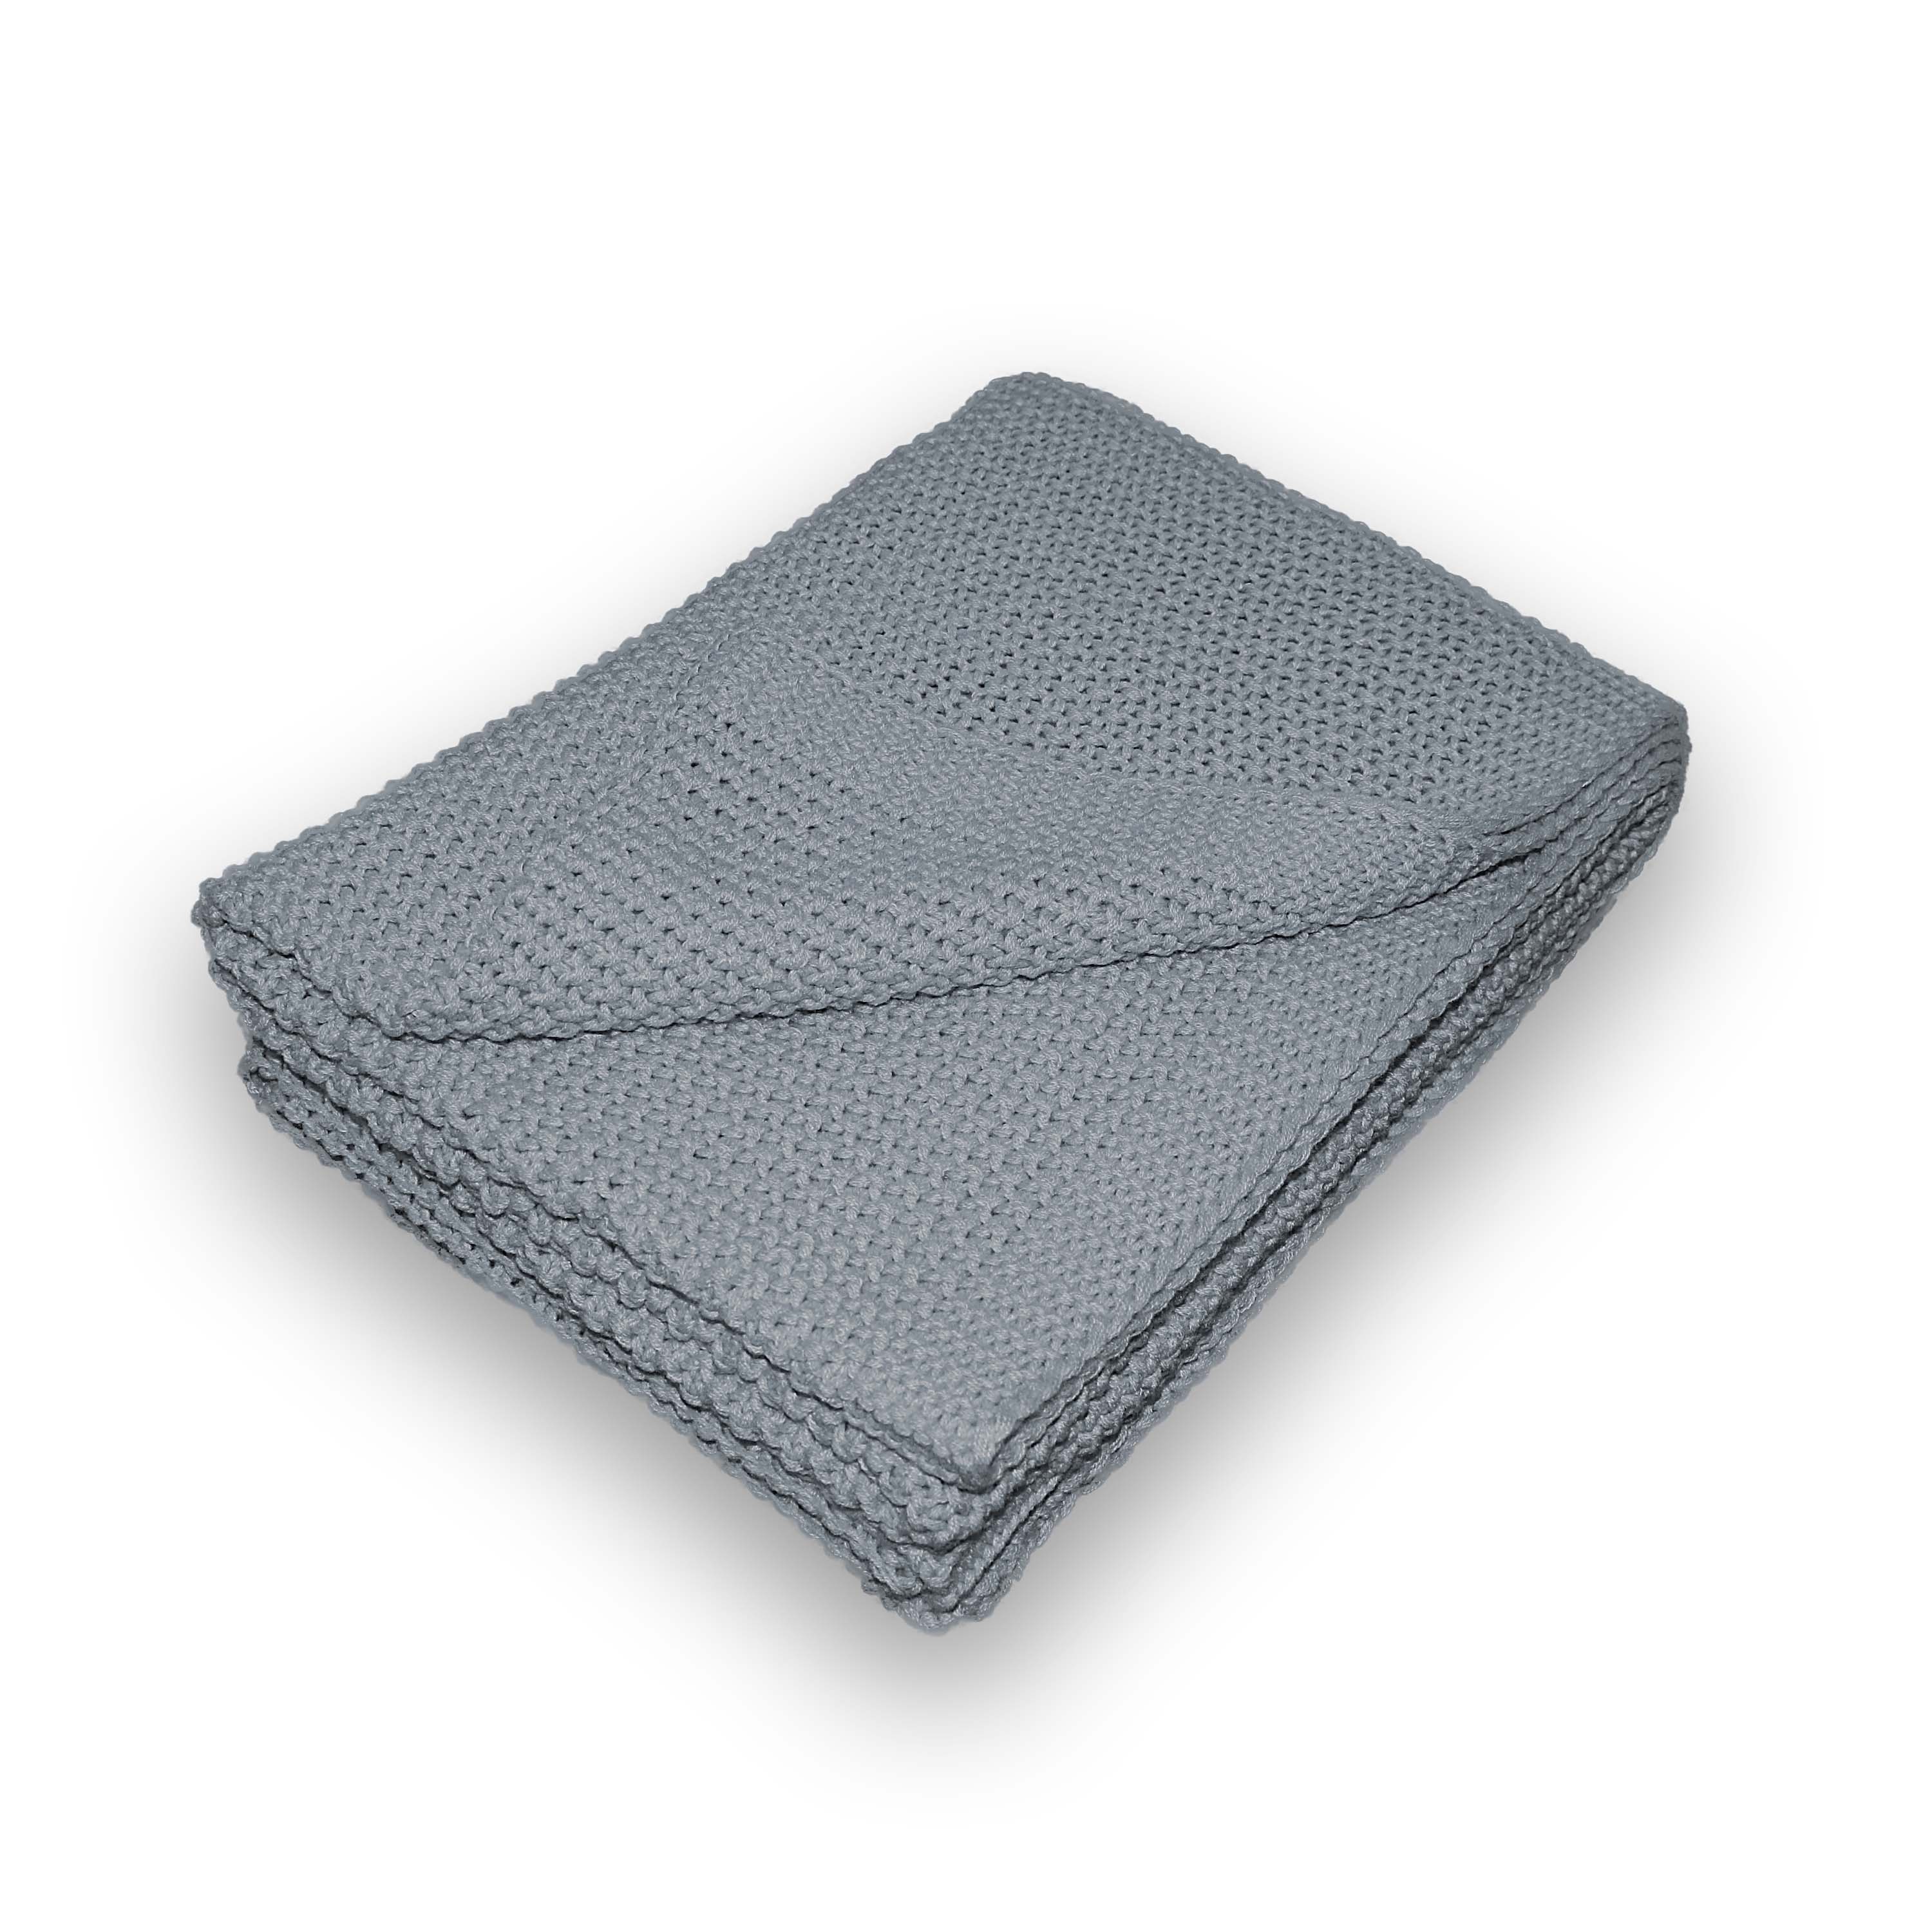 Traumhaft gut schlafen Strickdecke – Kuscheldecke in verschiedenen Farben, 100% Polyester